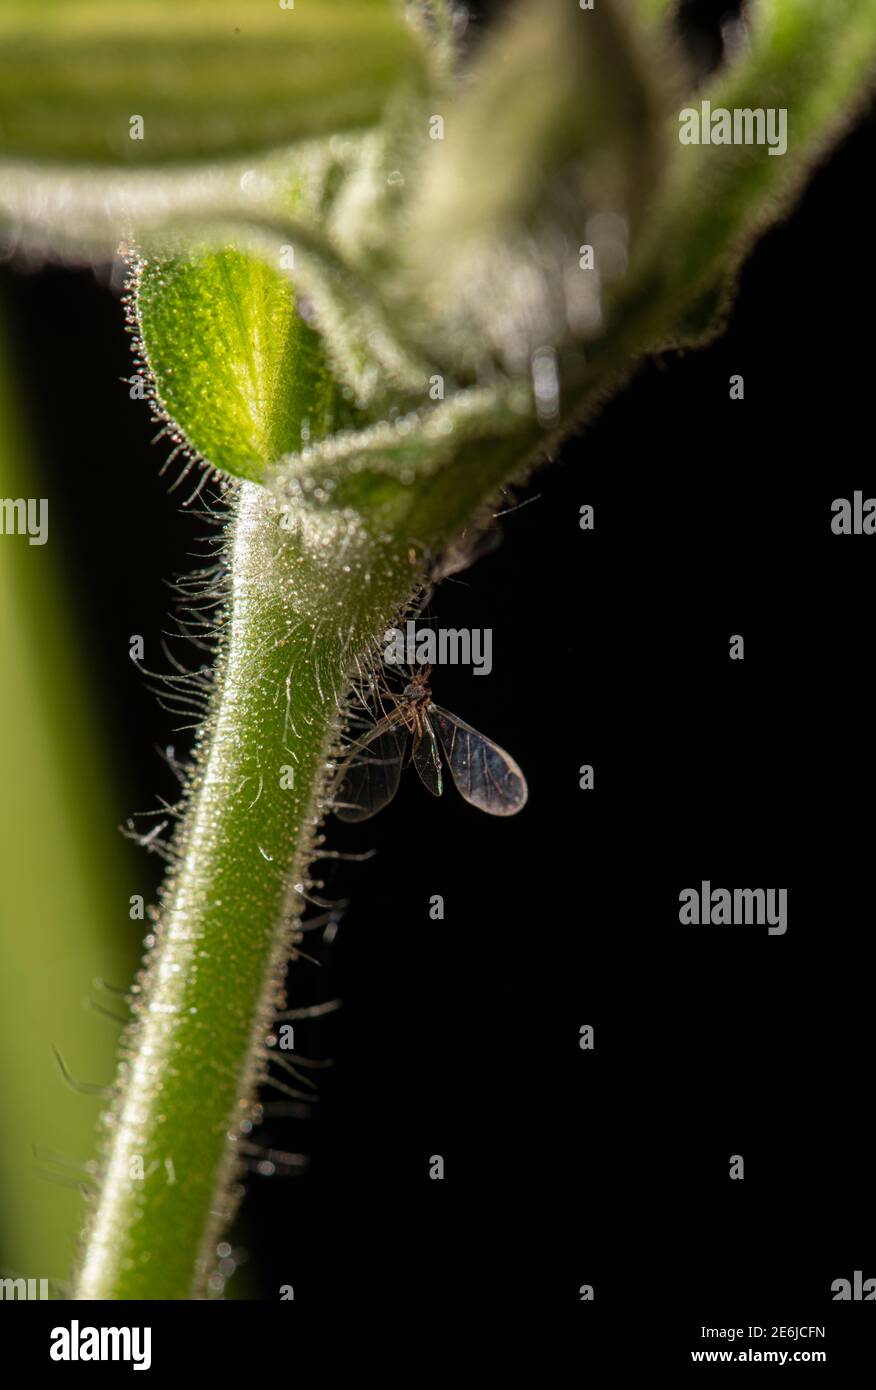 Mouche du chat à fleurs de nuit : Silene noctiflora. Surrey, Royaume-Uni. Insecte coincé sur les poils collants de la tige Banque D'Images